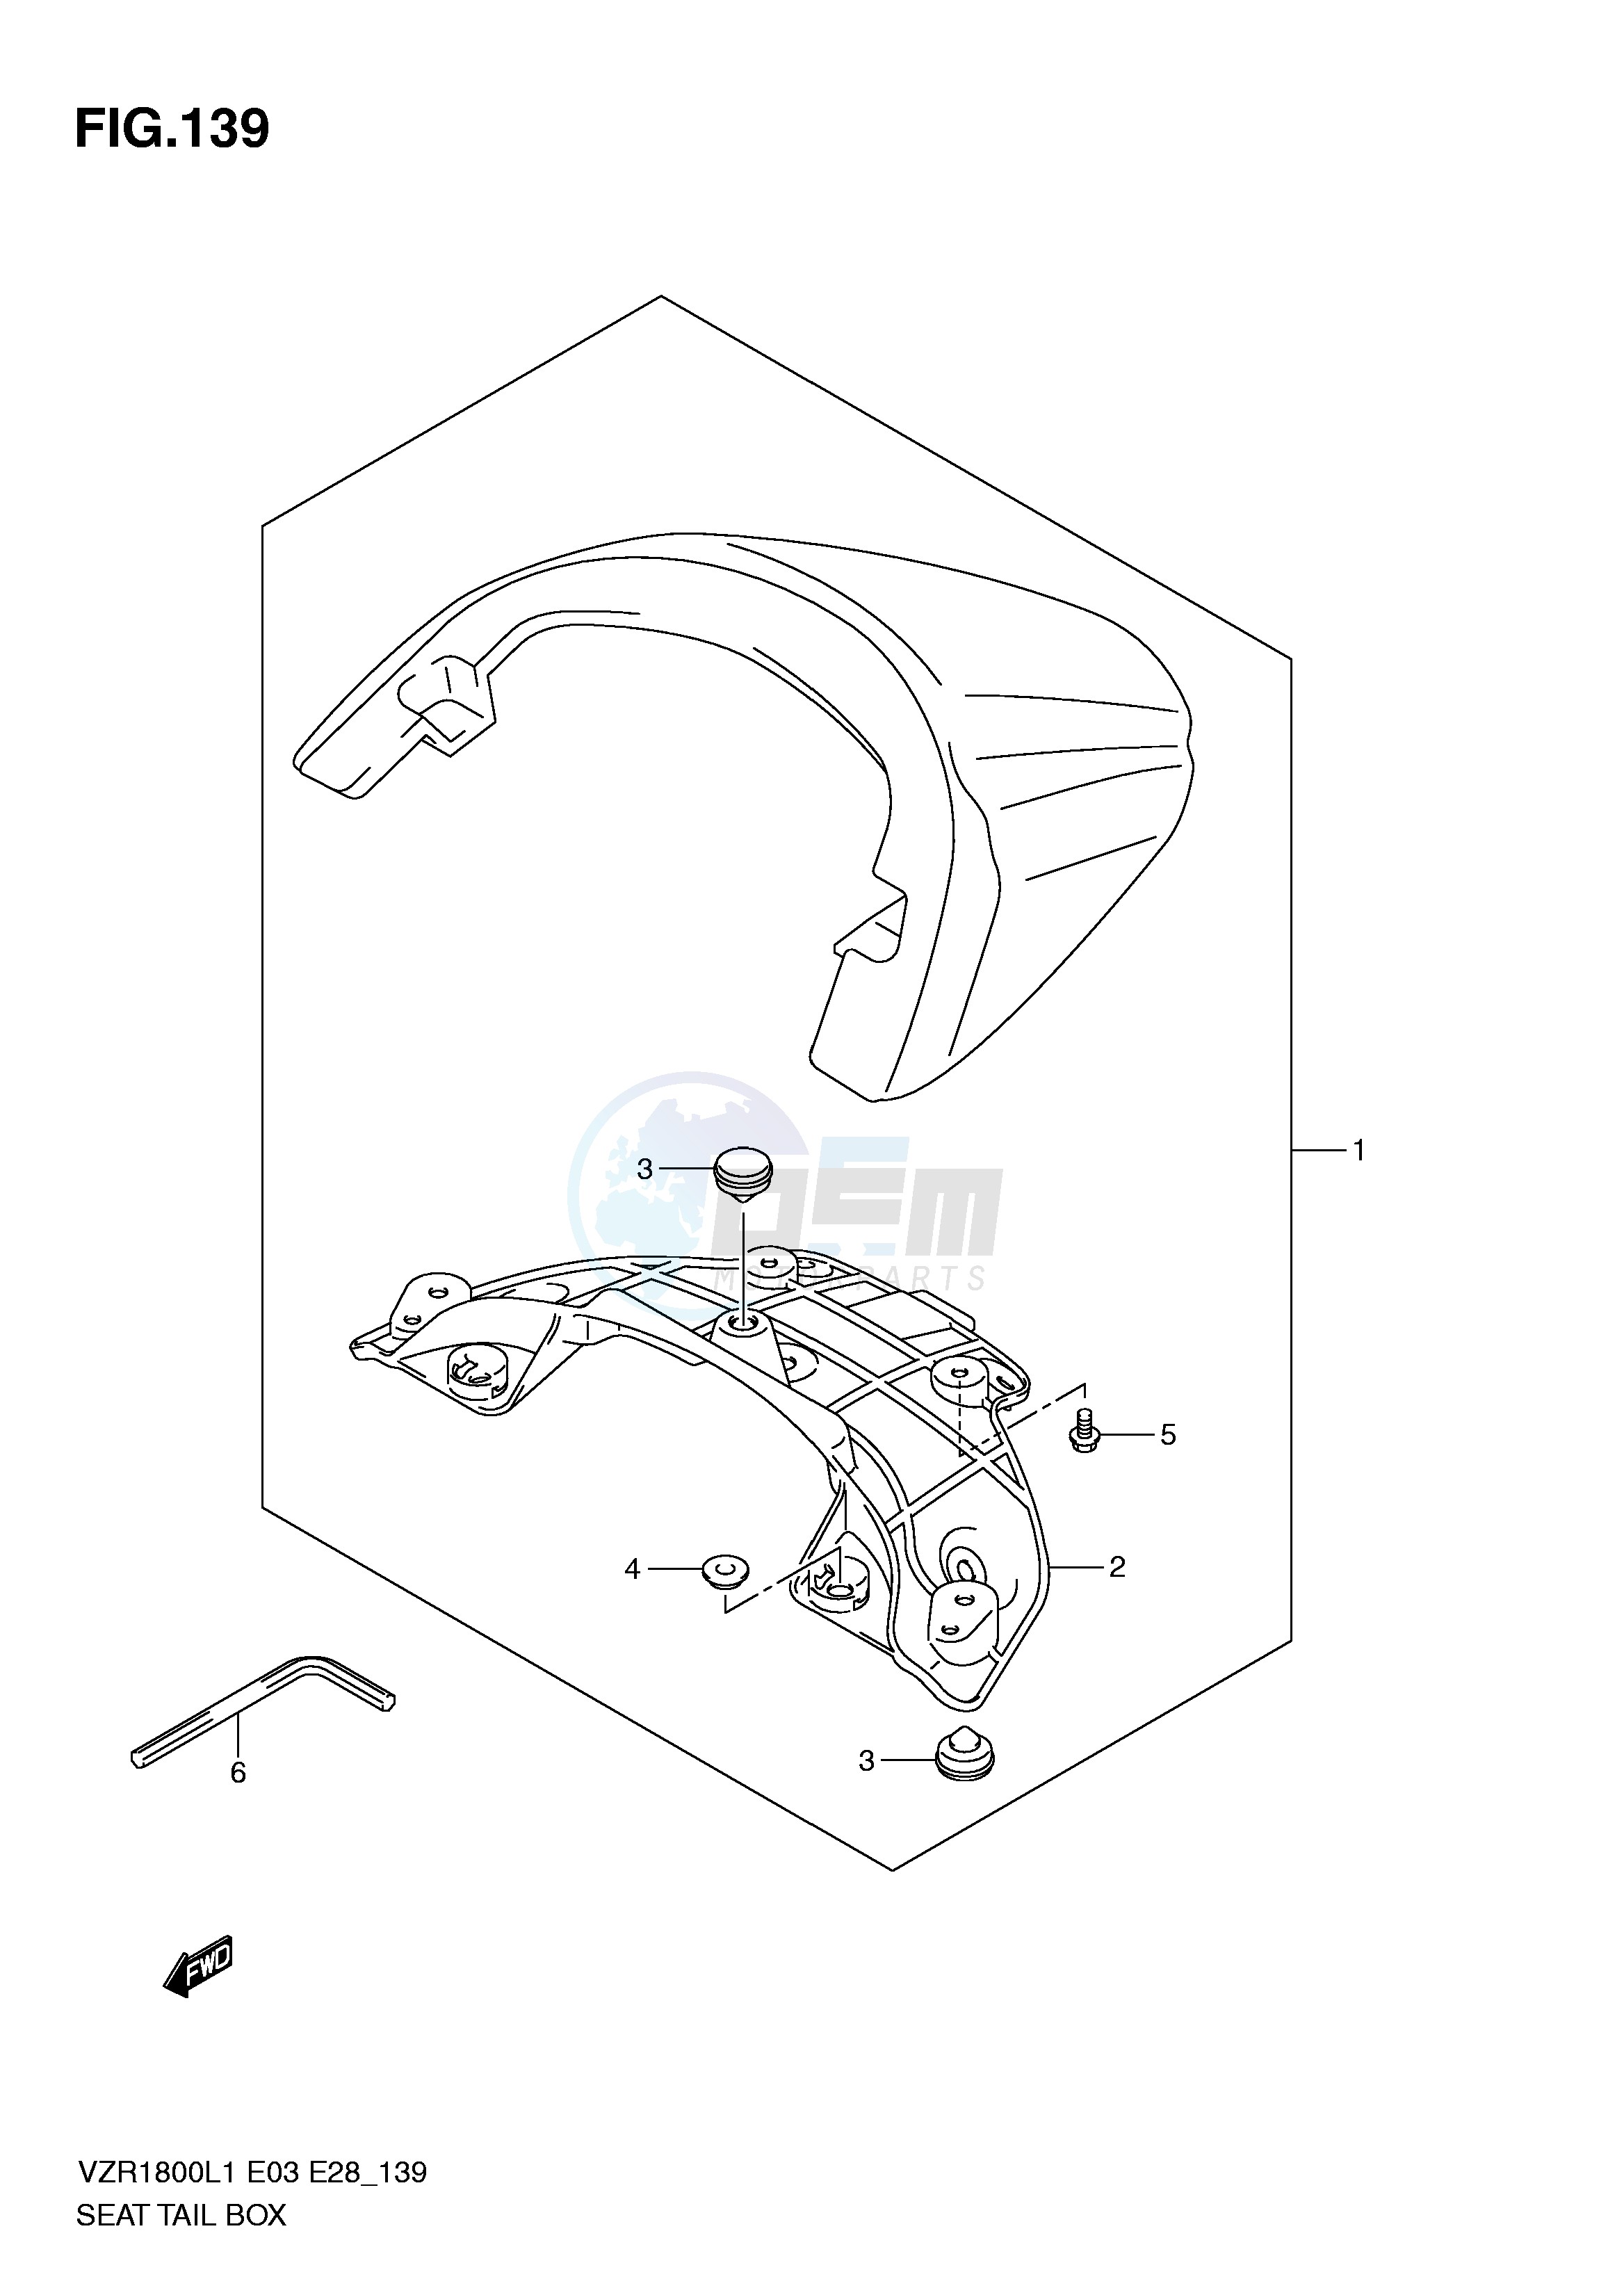 SEAT TAIL BOX (VZR1800L1 E3) blueprint